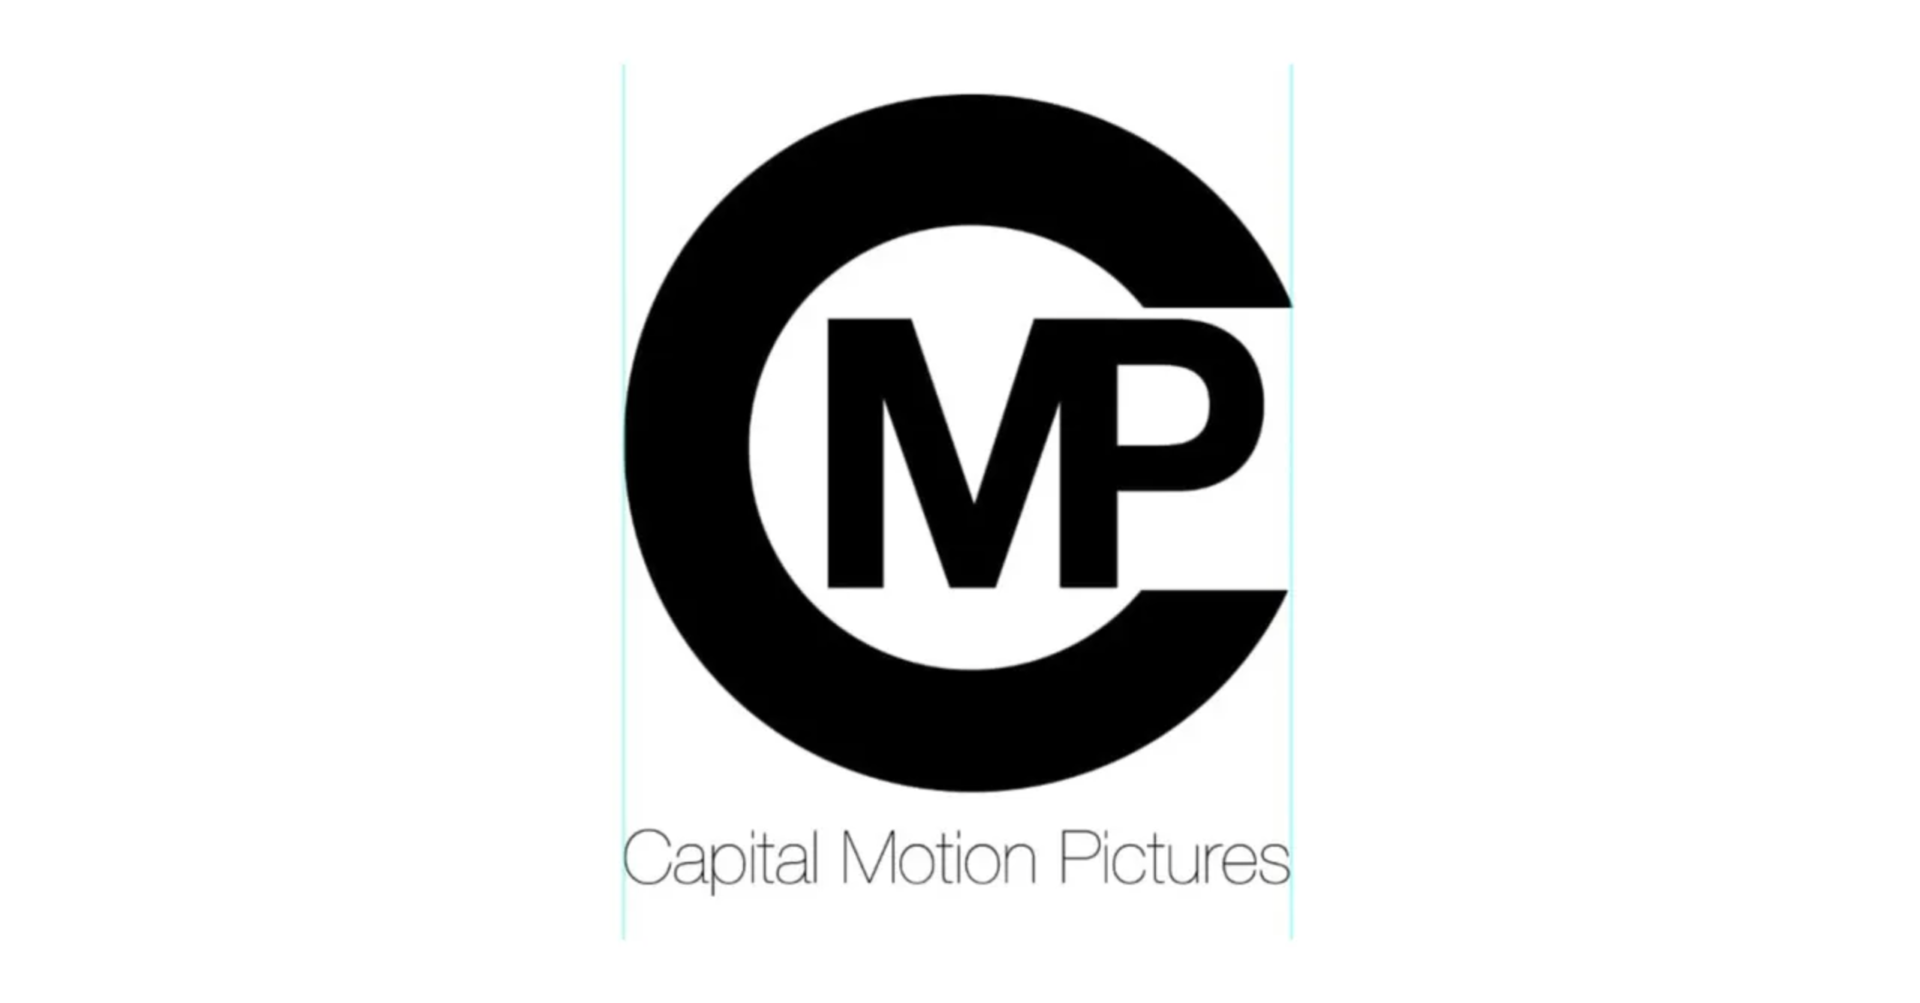 Introducing: CMP Comic Book Media Platform